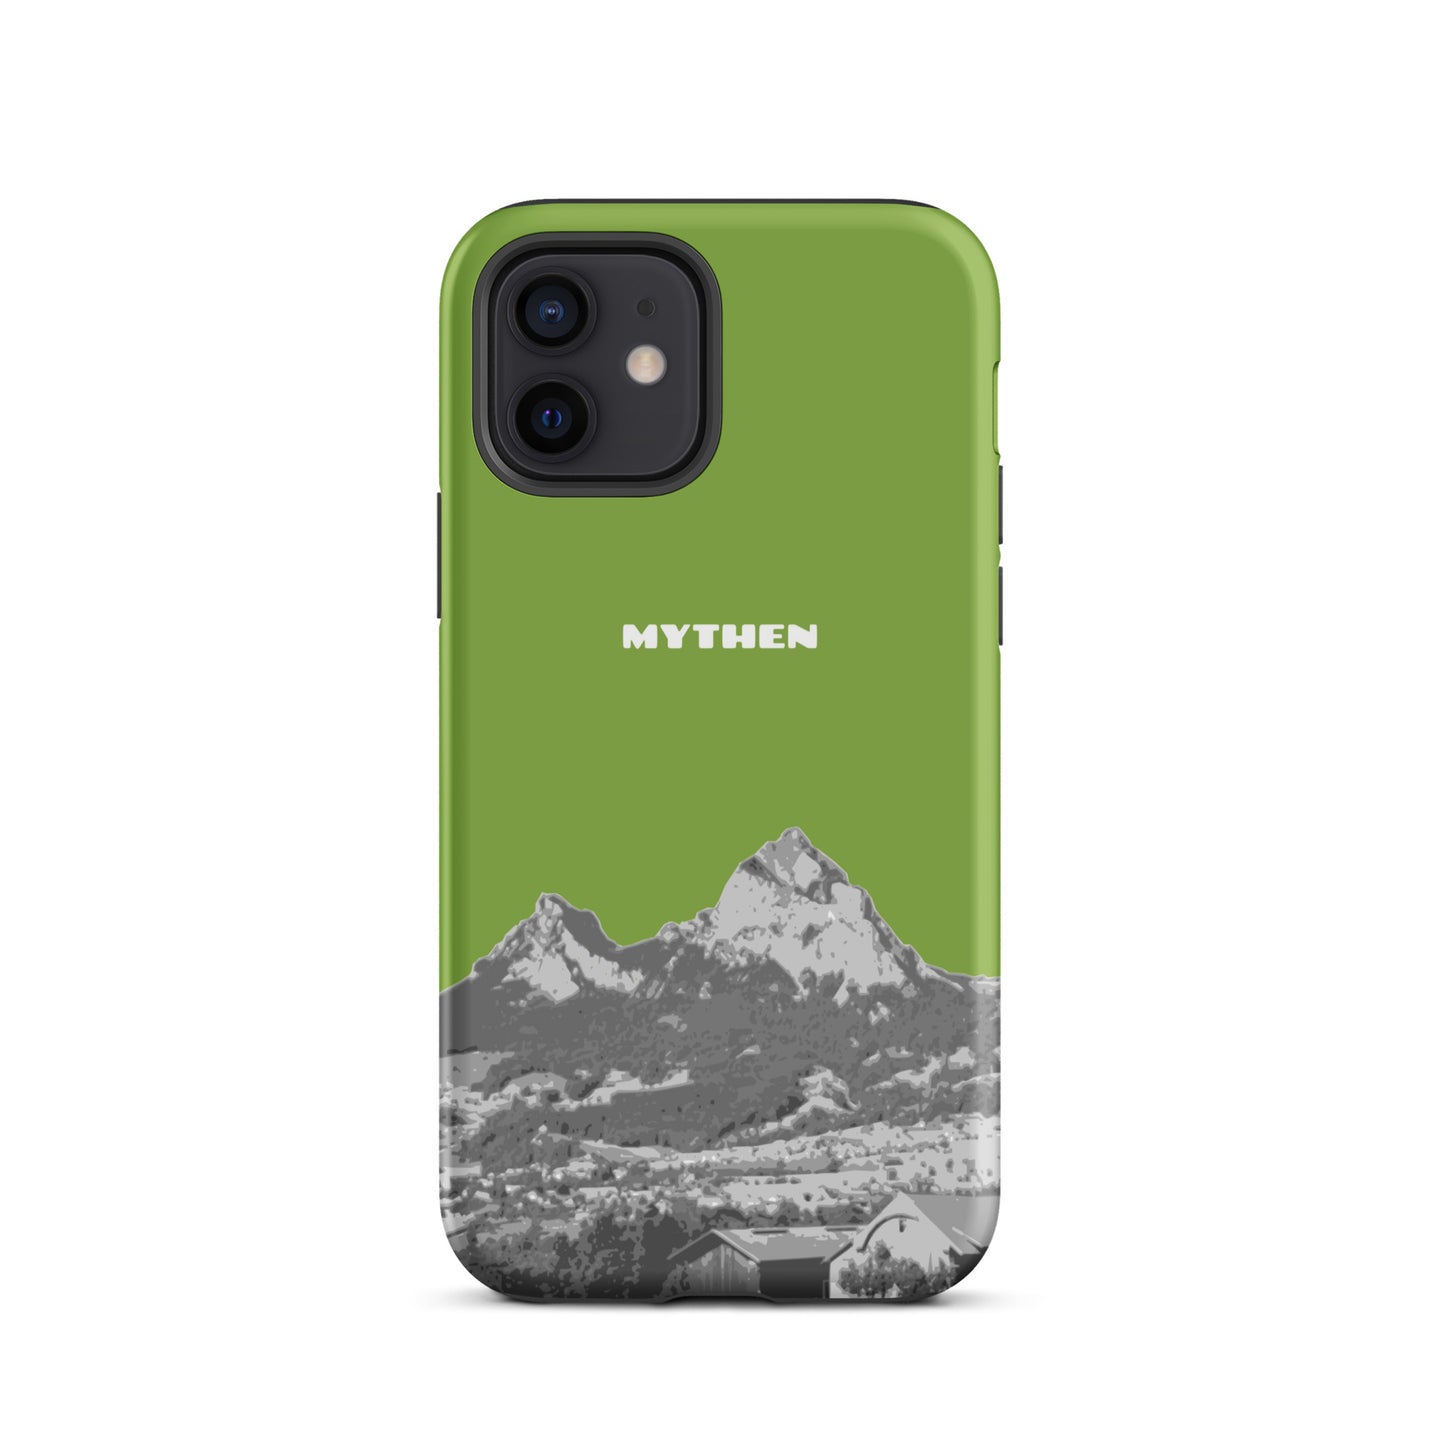 Hülle für das iPhone 12 von Apple in der Farbe Gelbgrün, die den Grossen Mythen und den Kleinen Mythen bei Schwyz zeigt. 